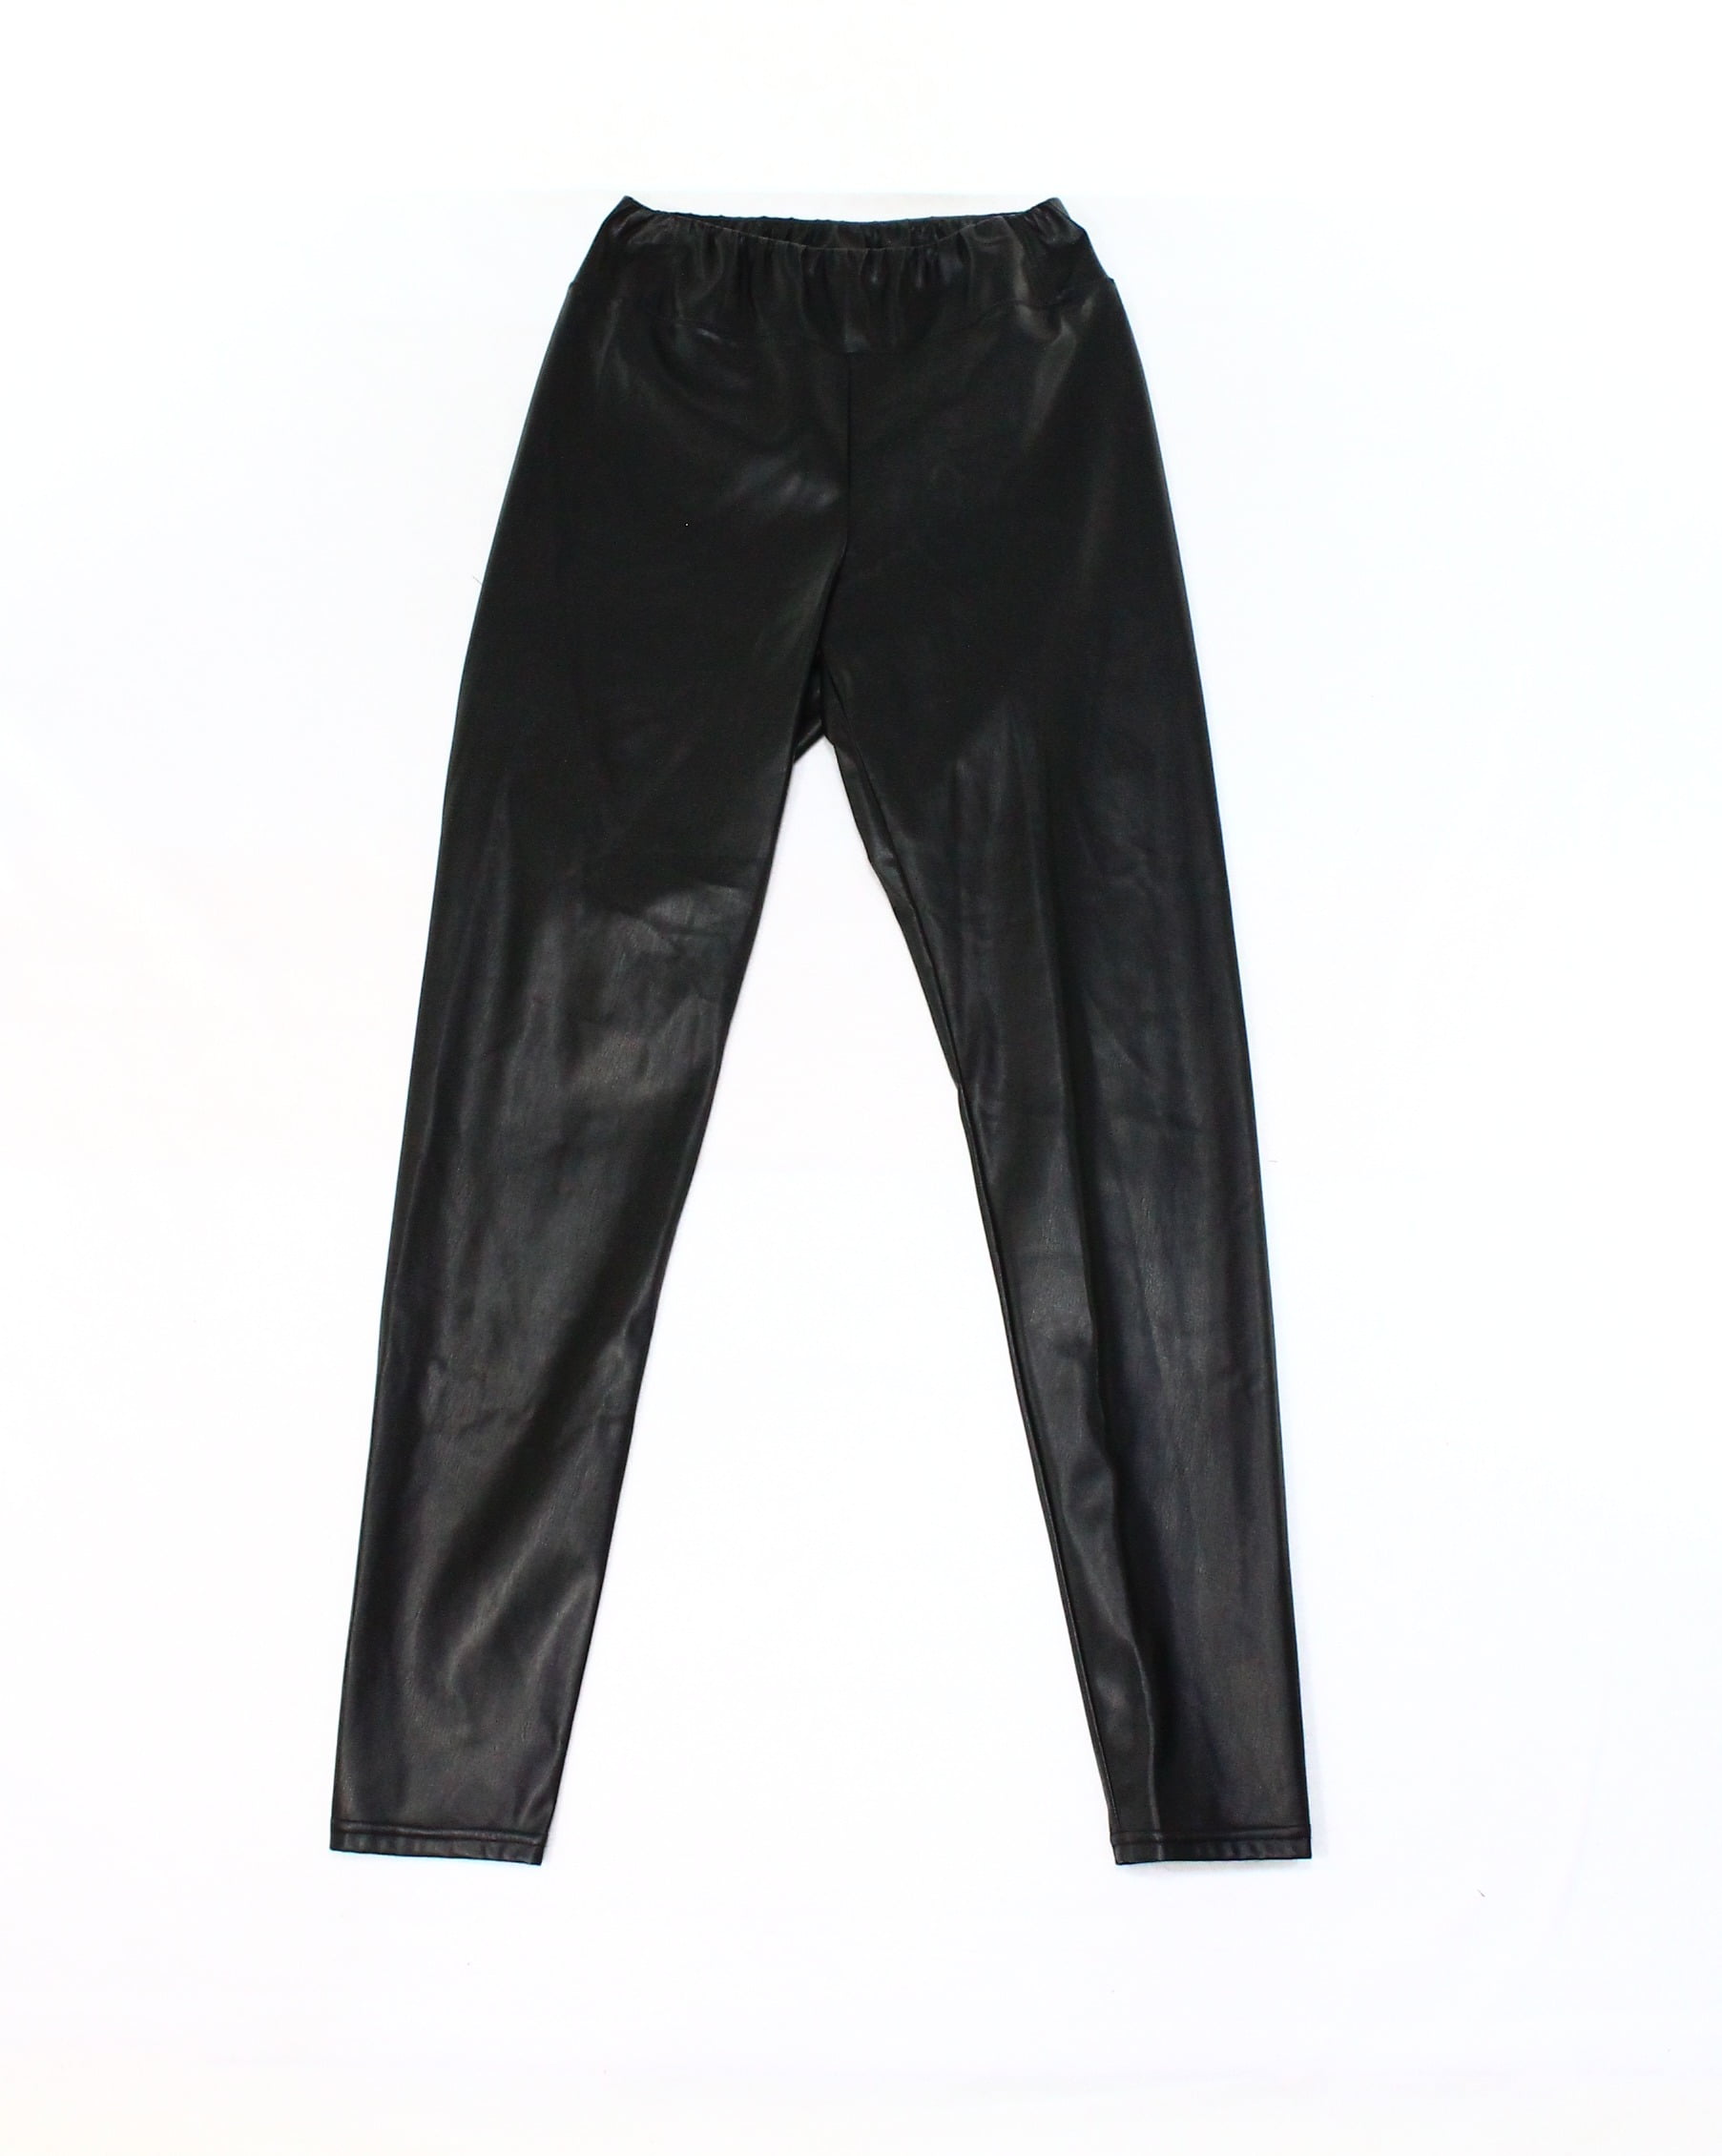 ralph lauren women's leather pants